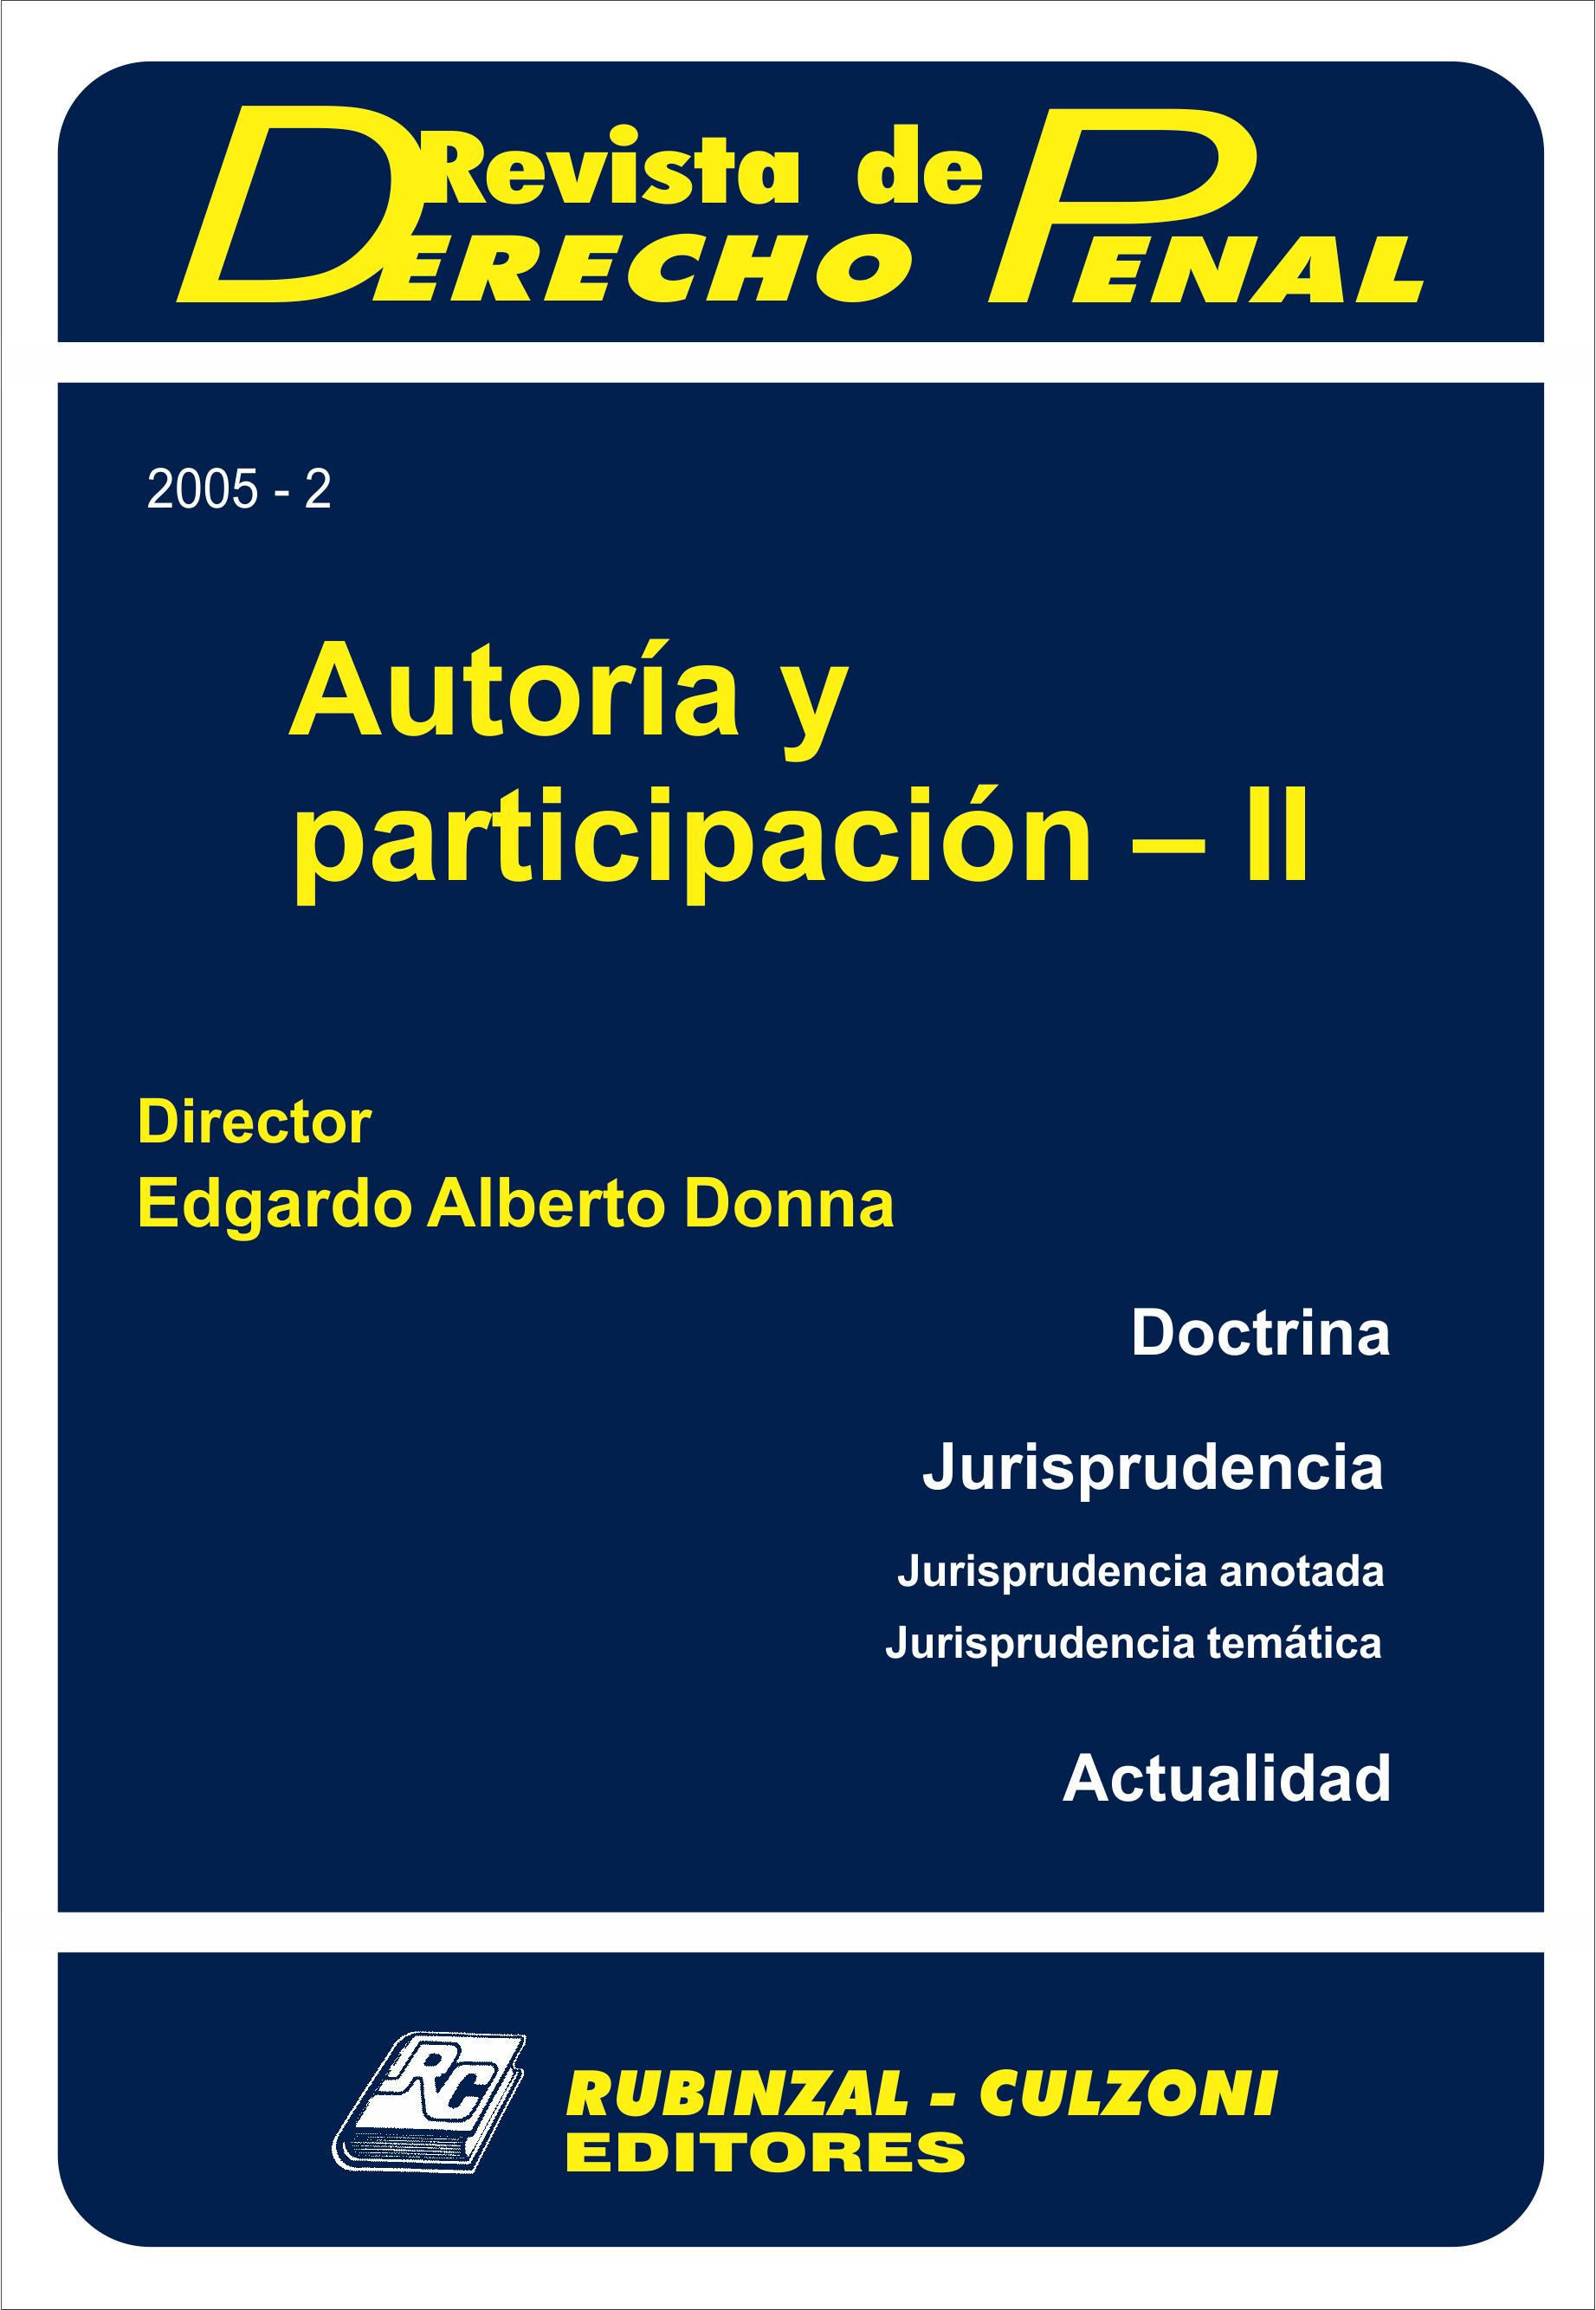 Revista de Derecho Penal - Autoría y participación - II